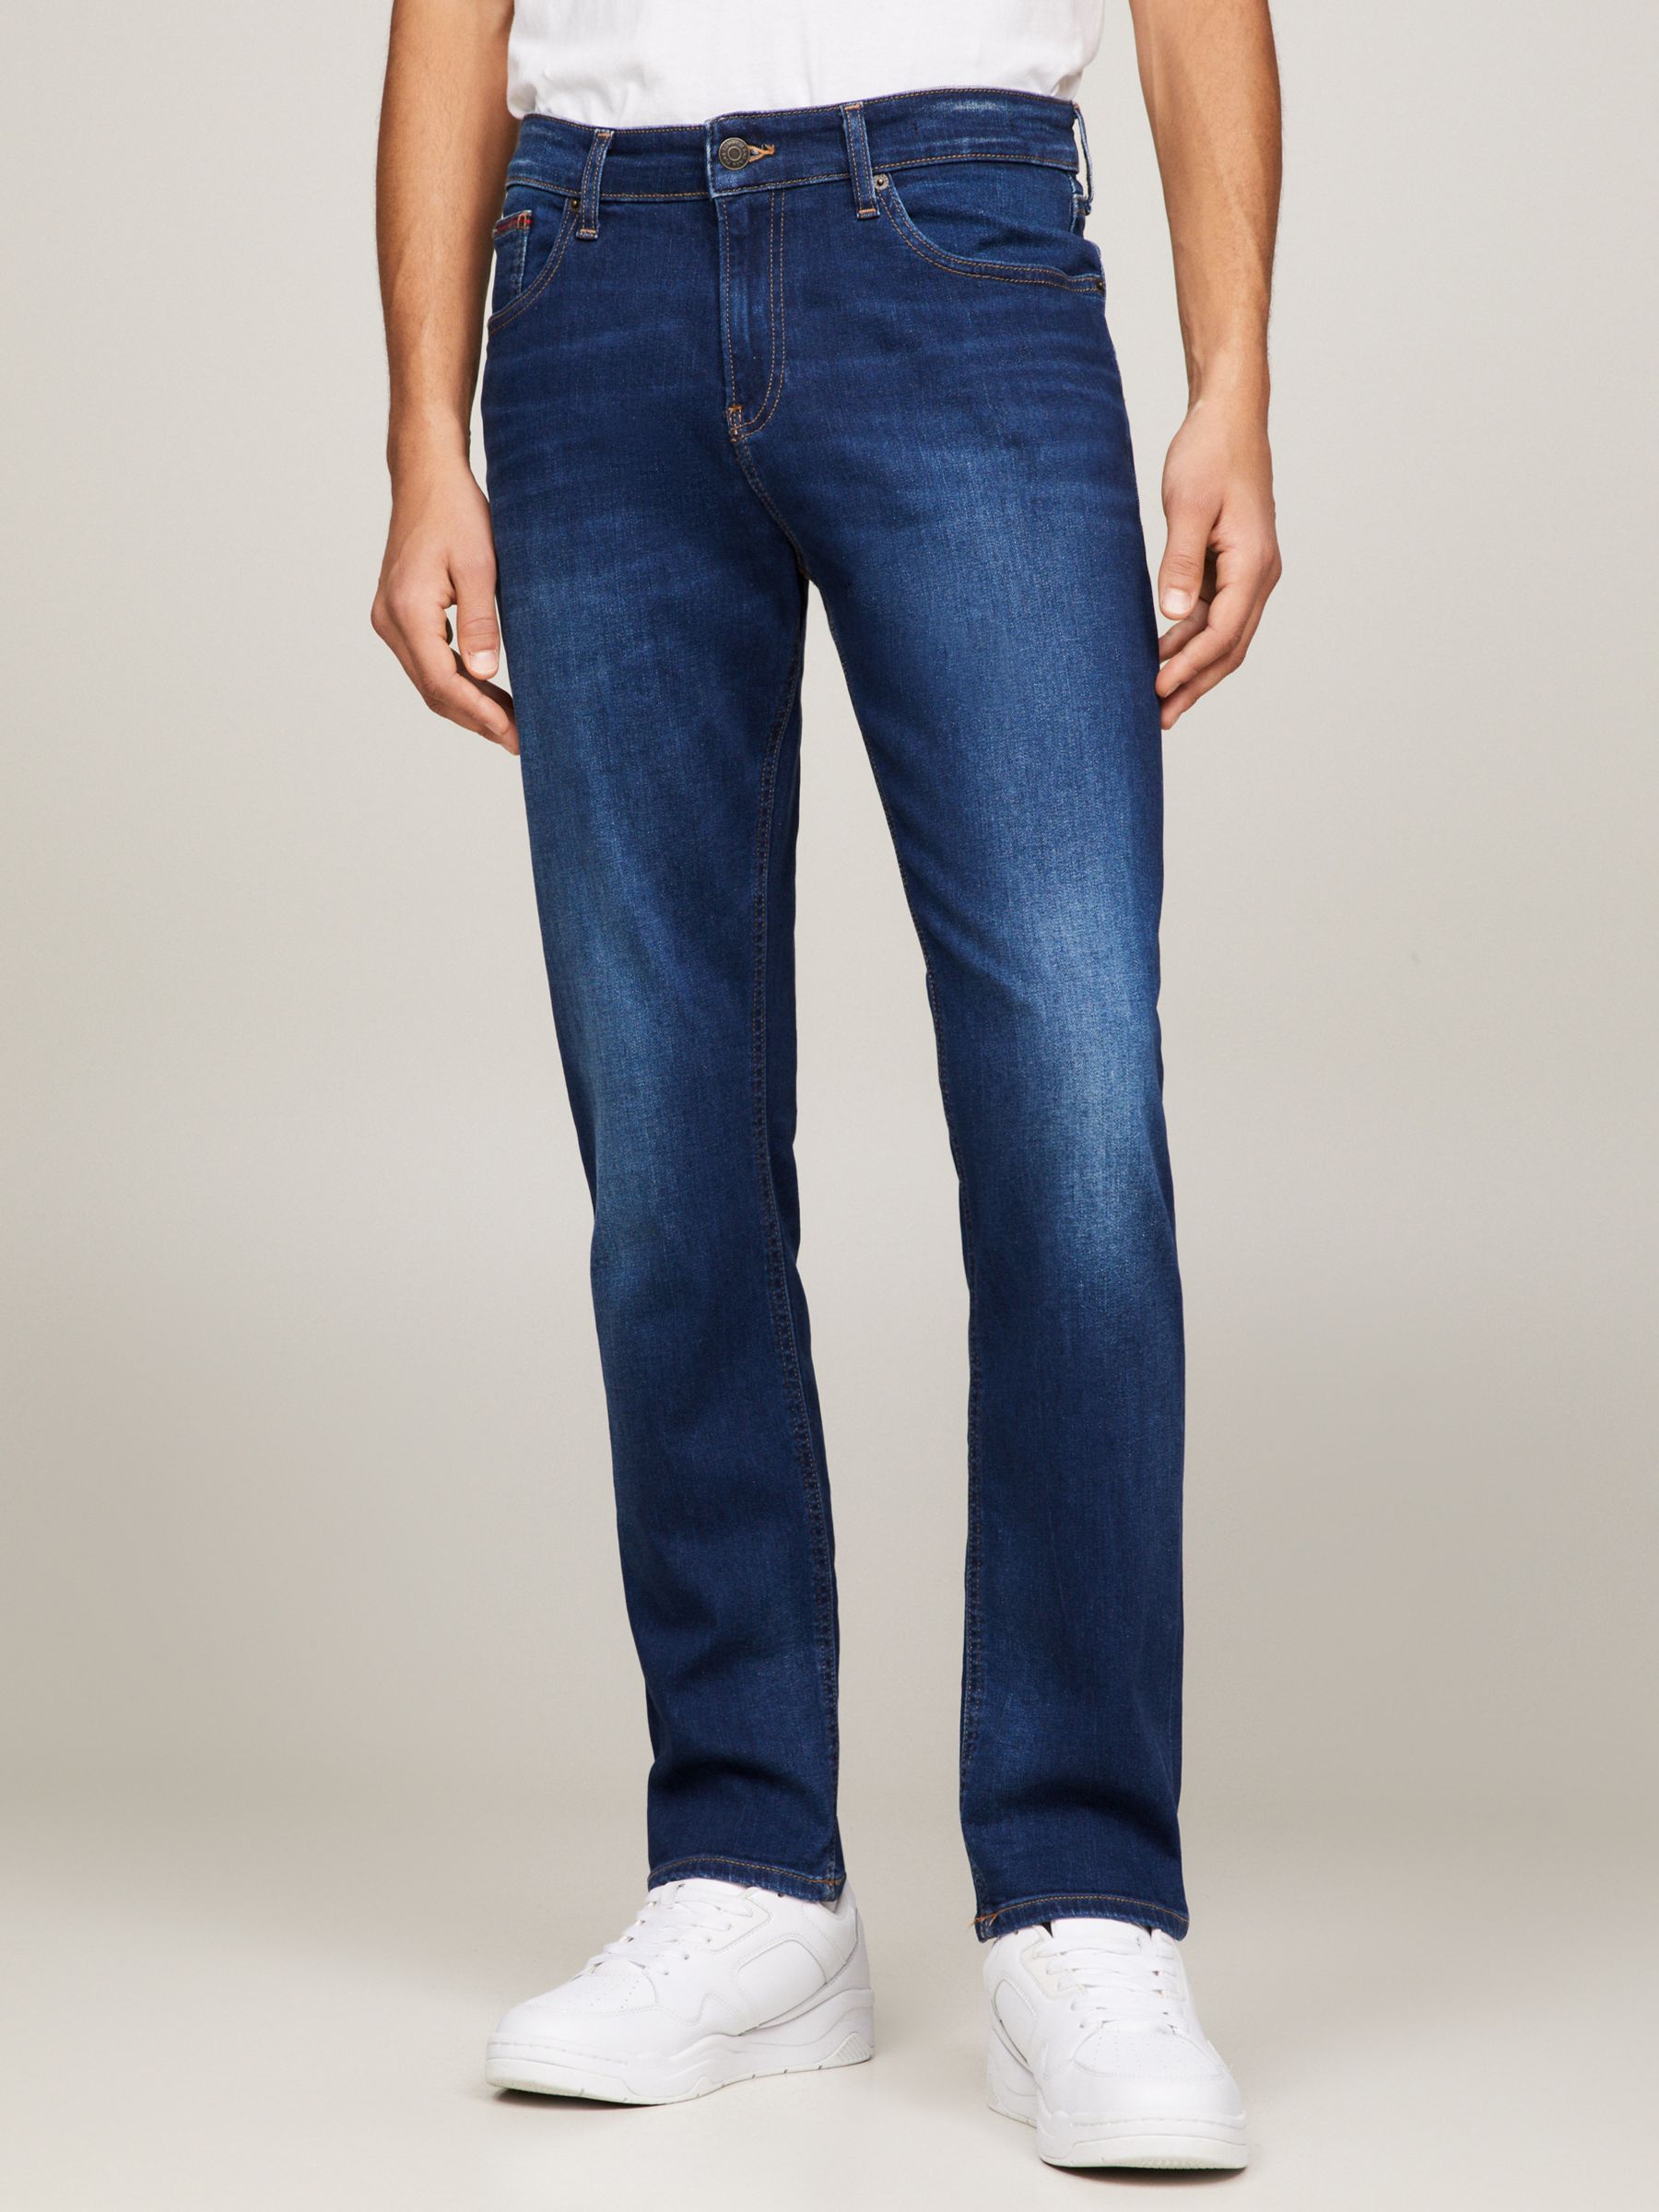 Tommy Hilfiger Jeans for Men, Online Sale up to 70% off